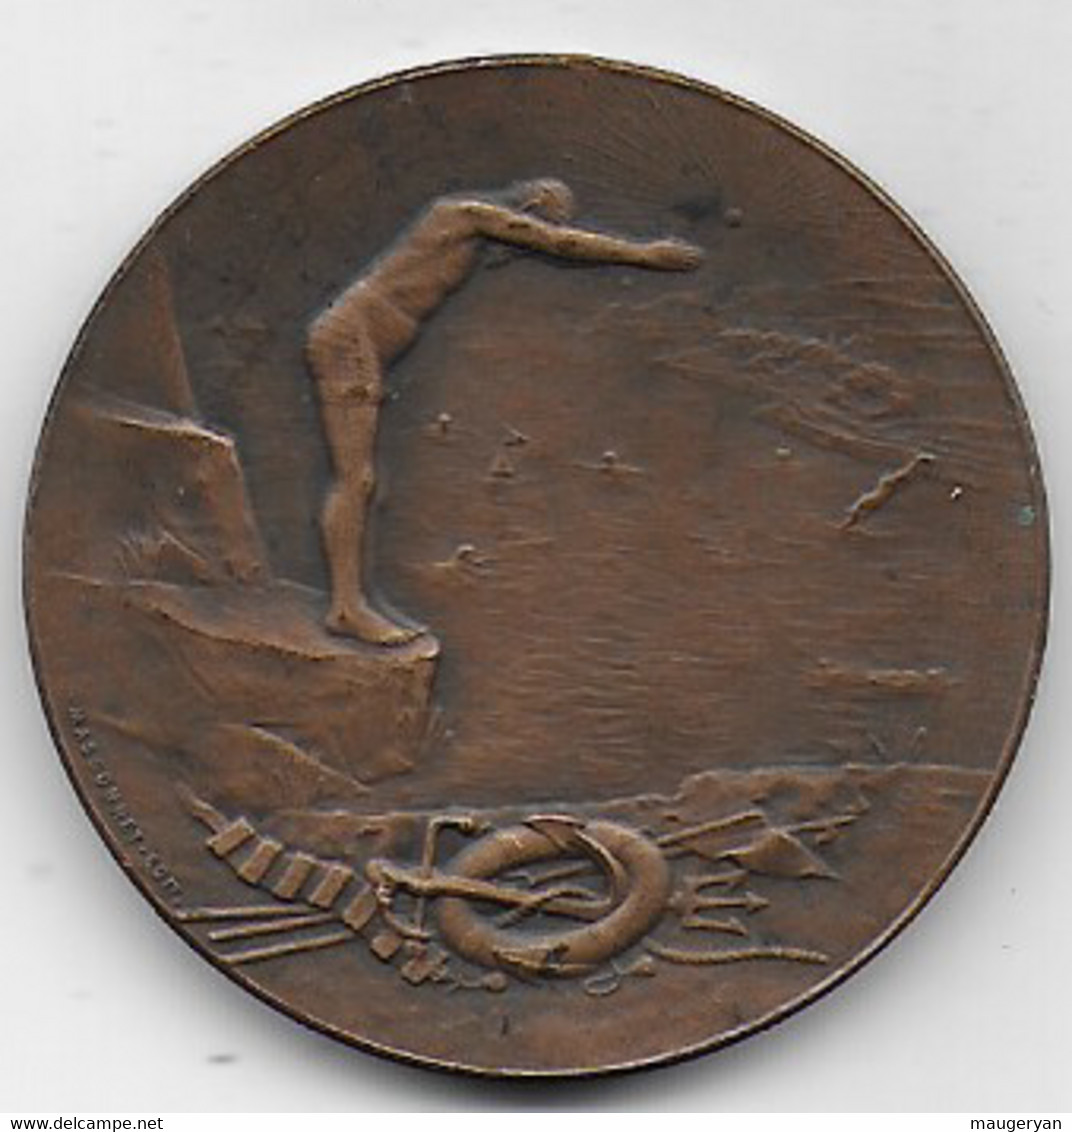 Médaille ECLAIREUR DE NICE ( Journal )  30 Aout 1908 - Professionnels / De Société